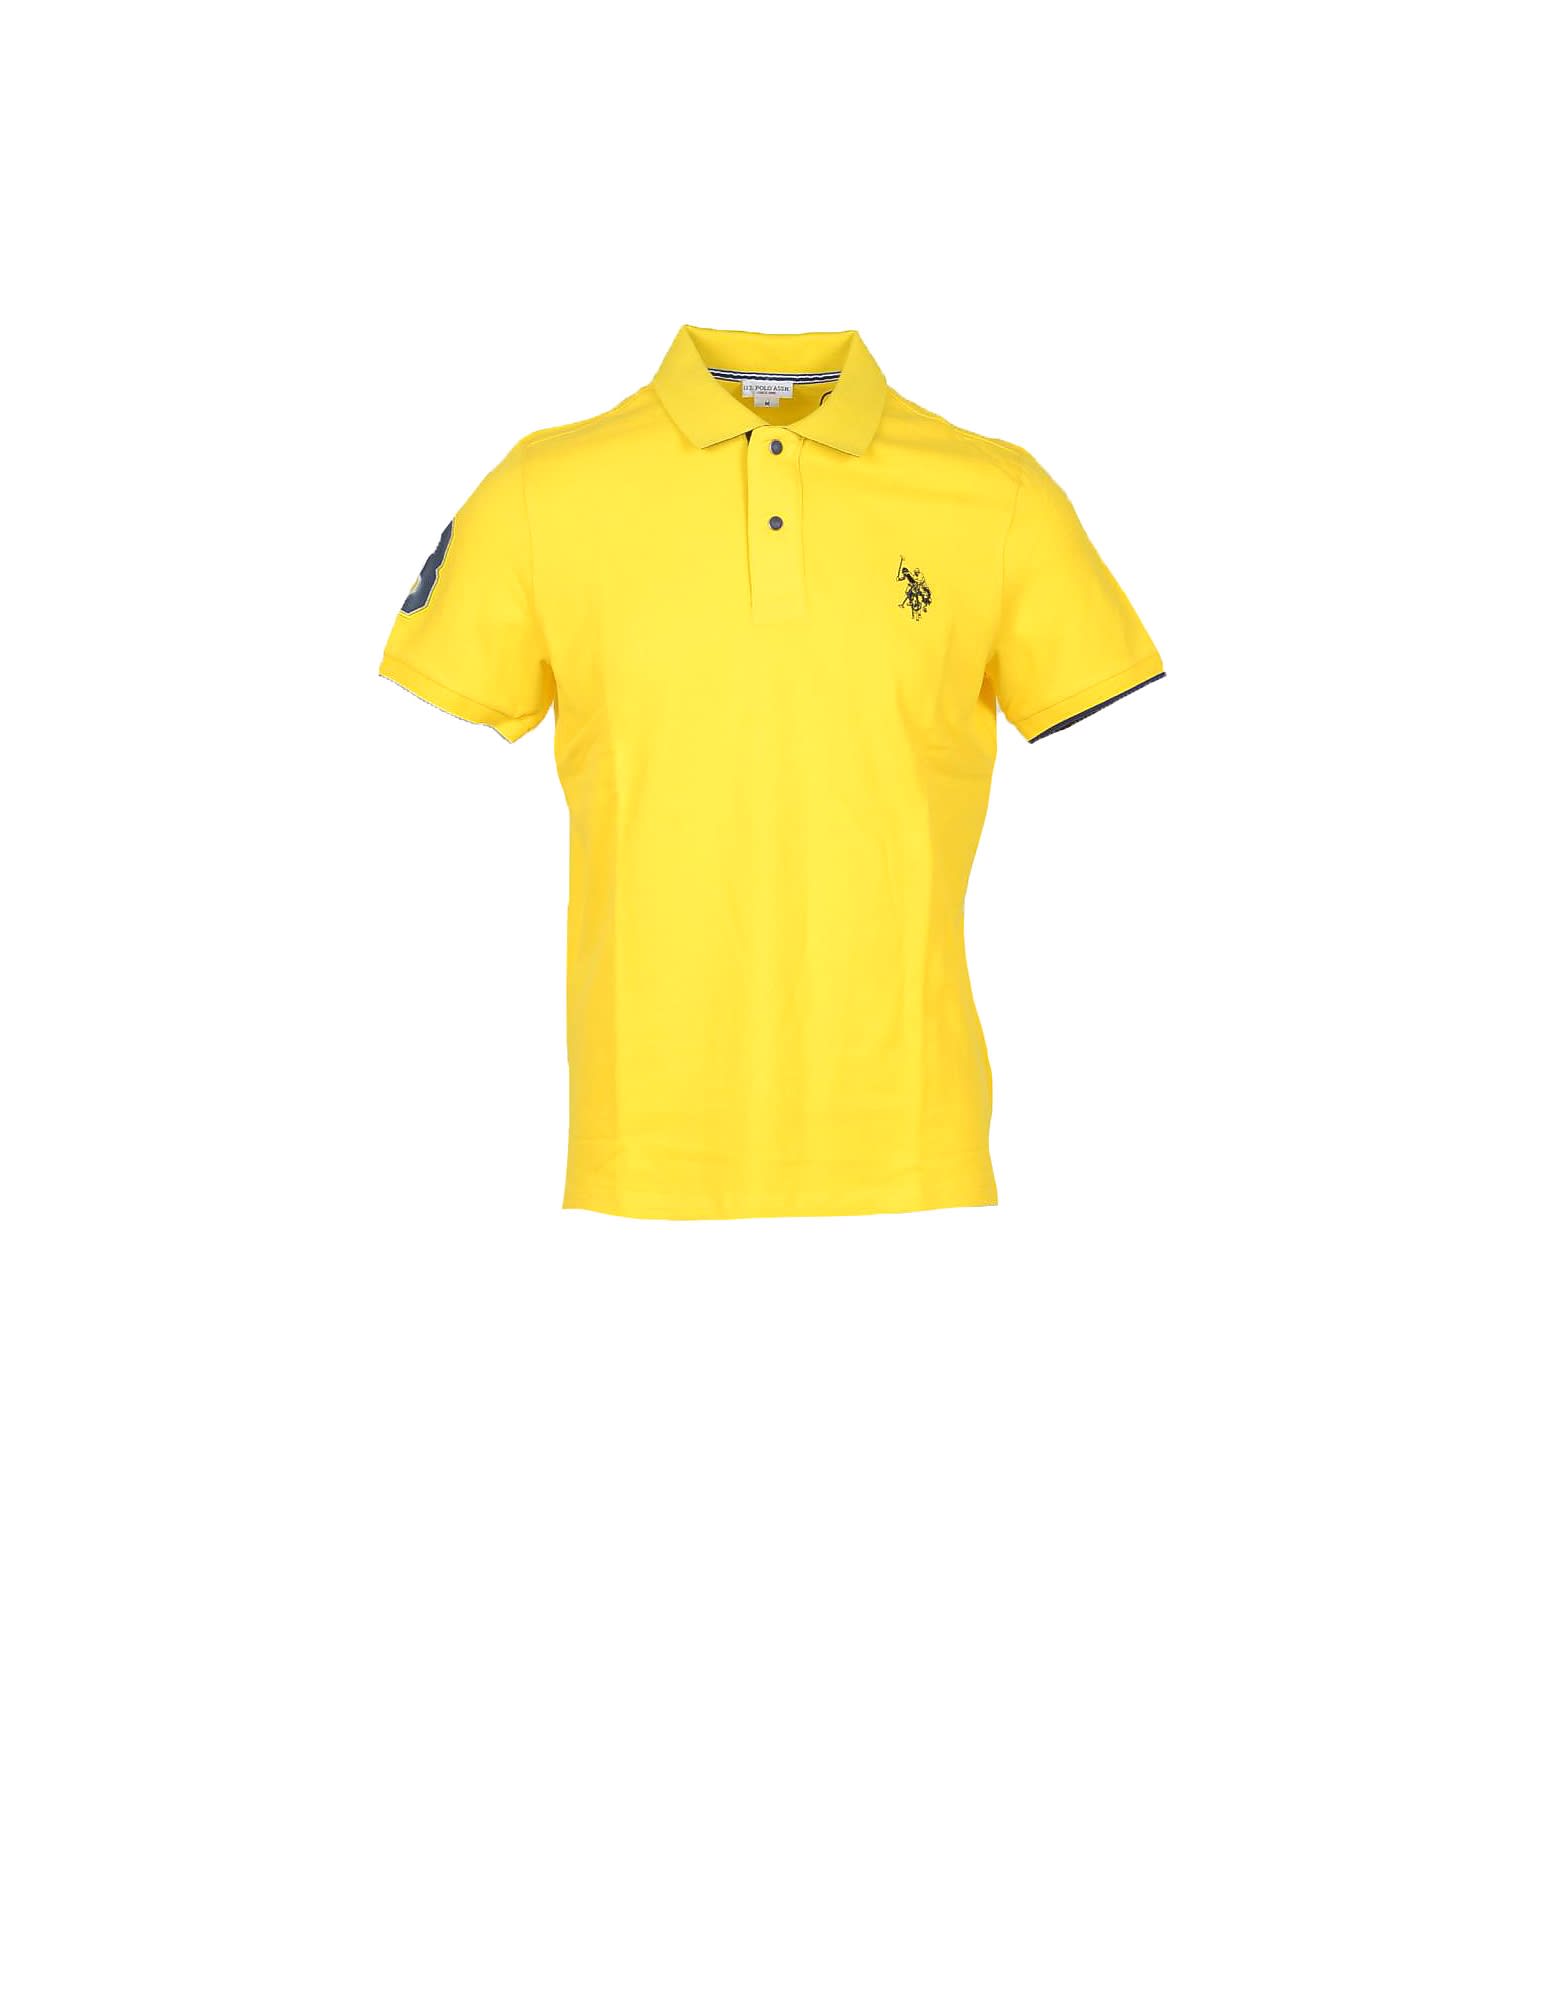 U.s. Polo Assn. Yellow Piqué Cotton Mens Polo Shirt